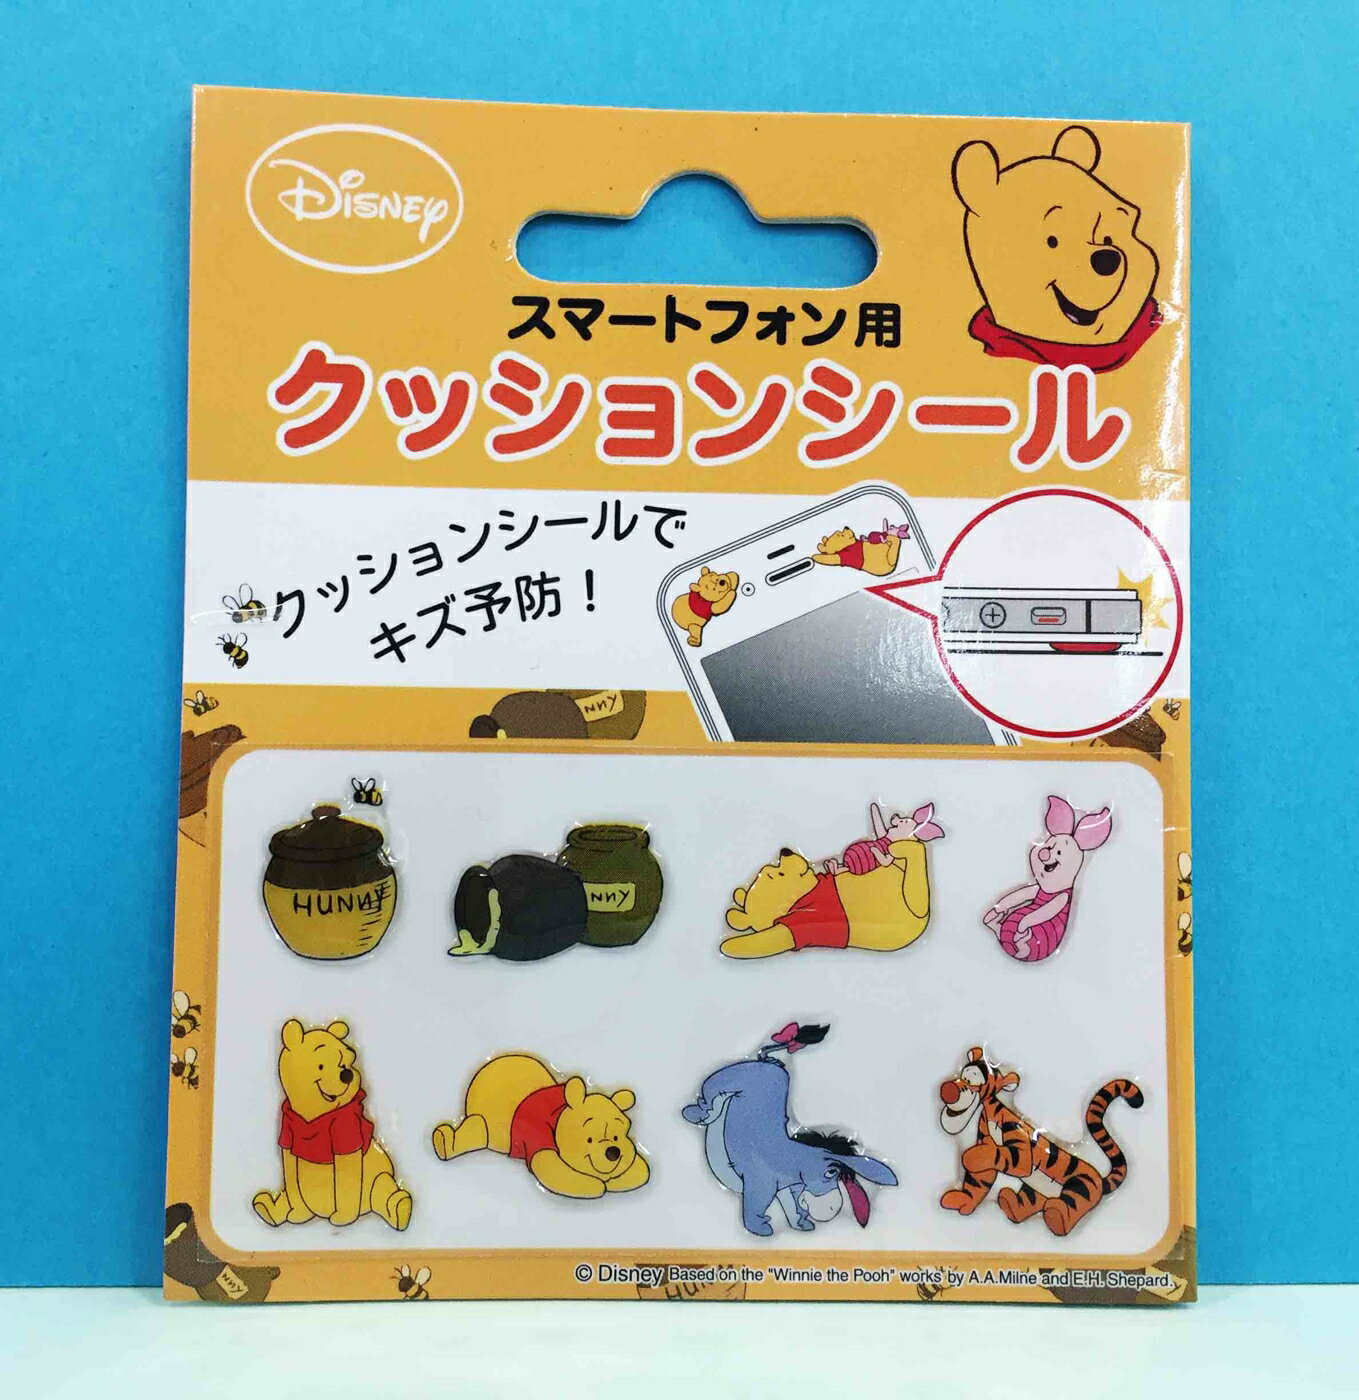 【震撼精品百貨】Winnie the Pooh 小熊維尼 手機防摔貼 震撼日式精品百貨